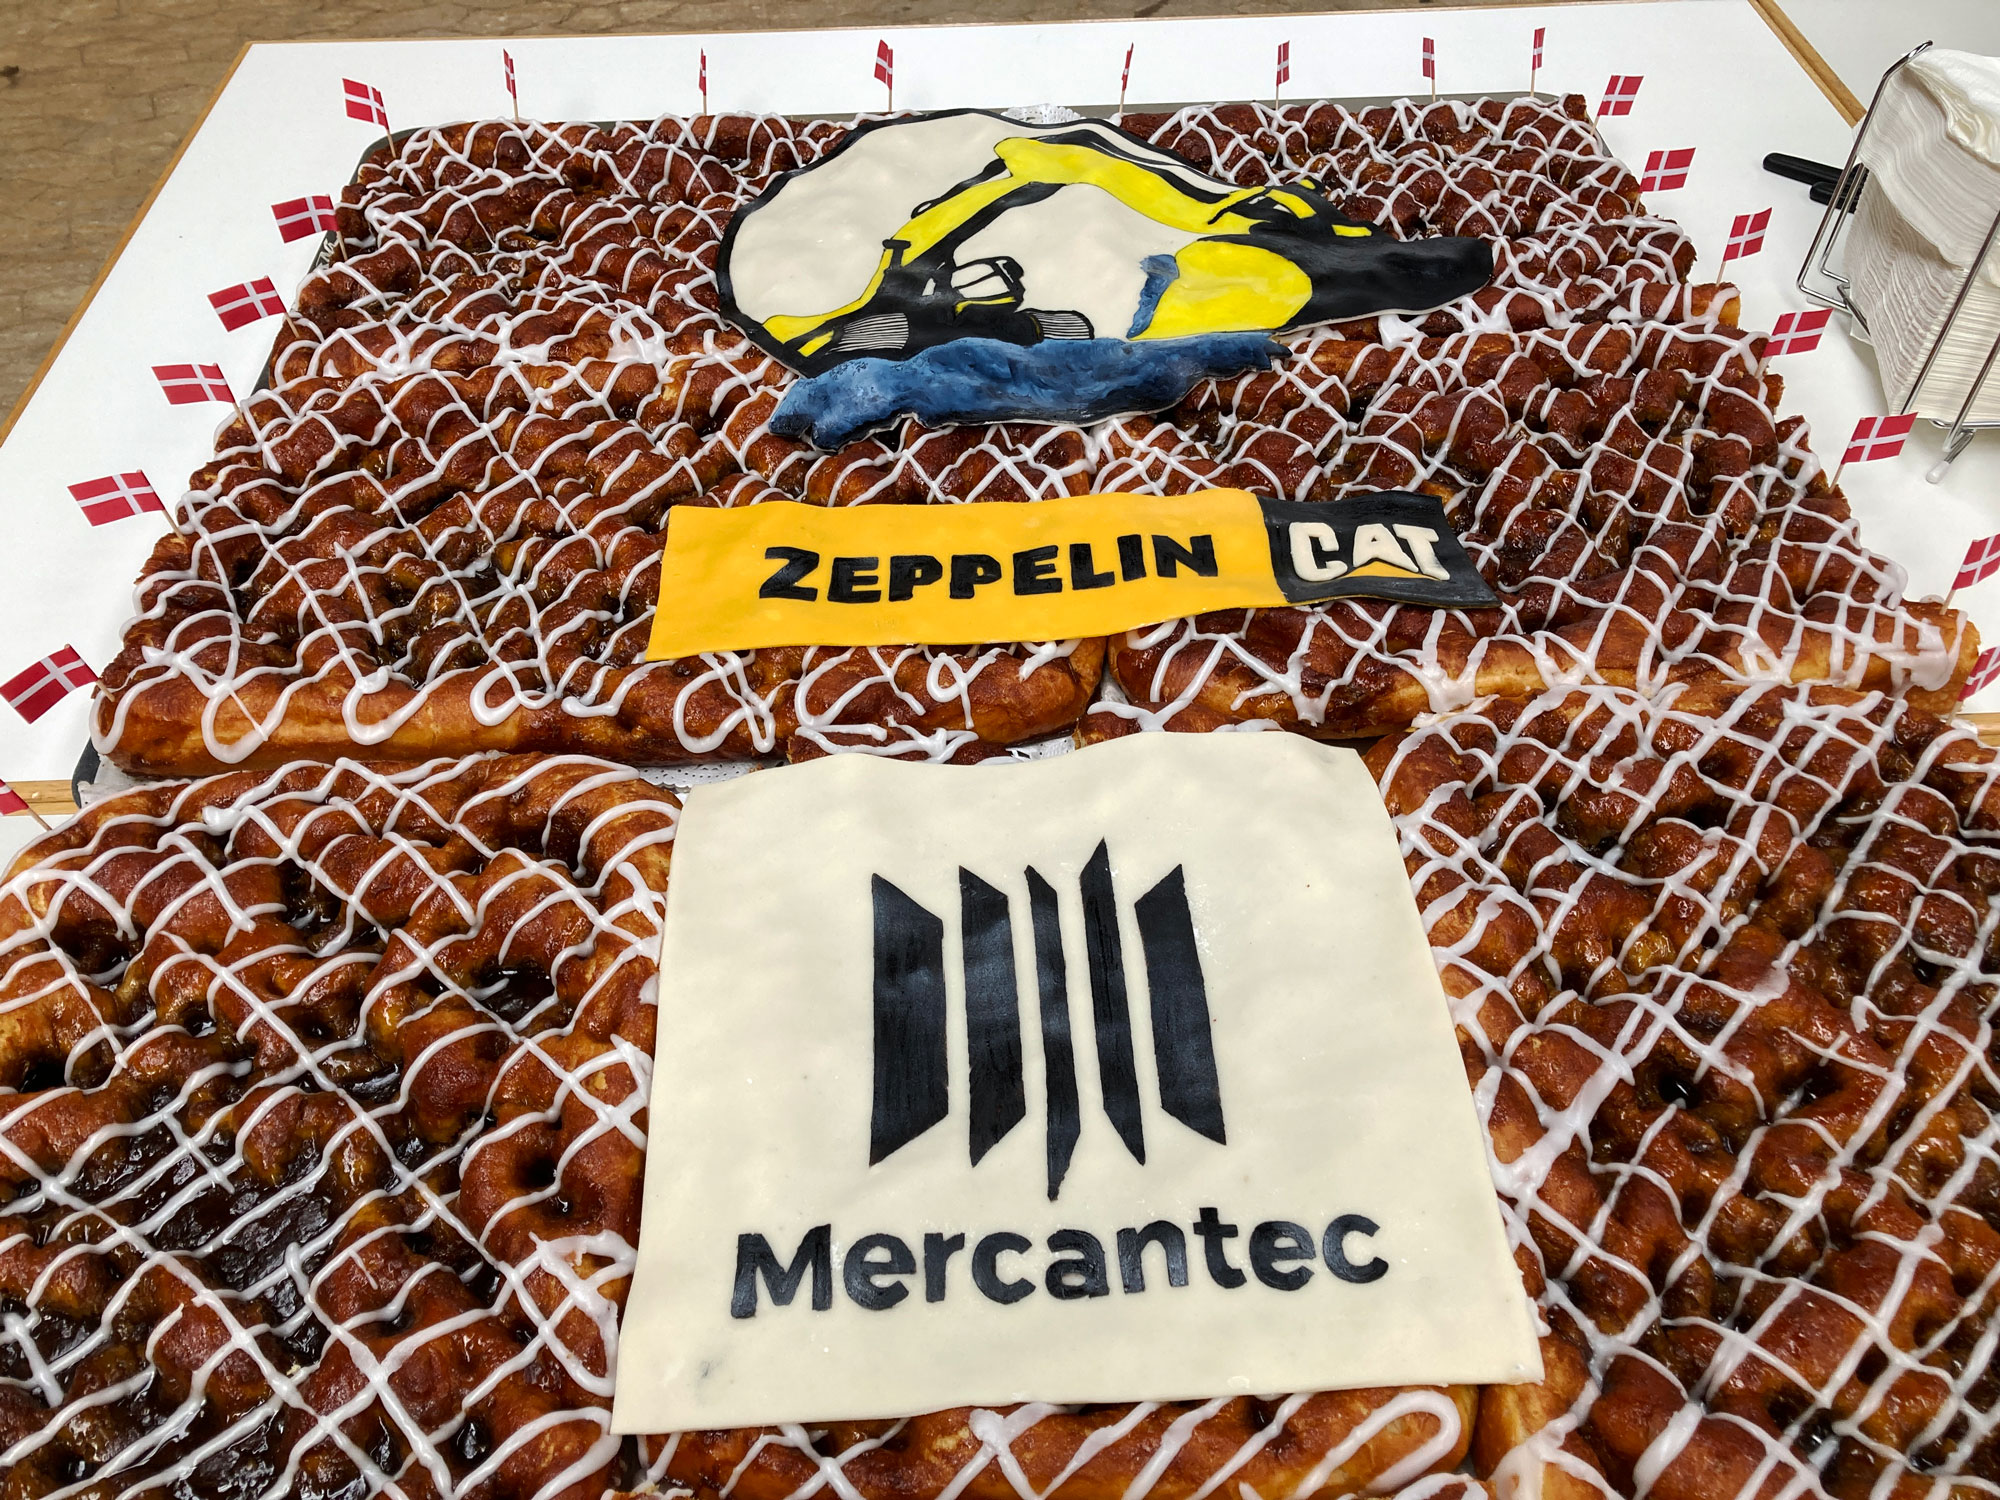 Lækker kage med logoer symboliserede de nye samarbejde mellem Zeppelin Danmark og Mercantec